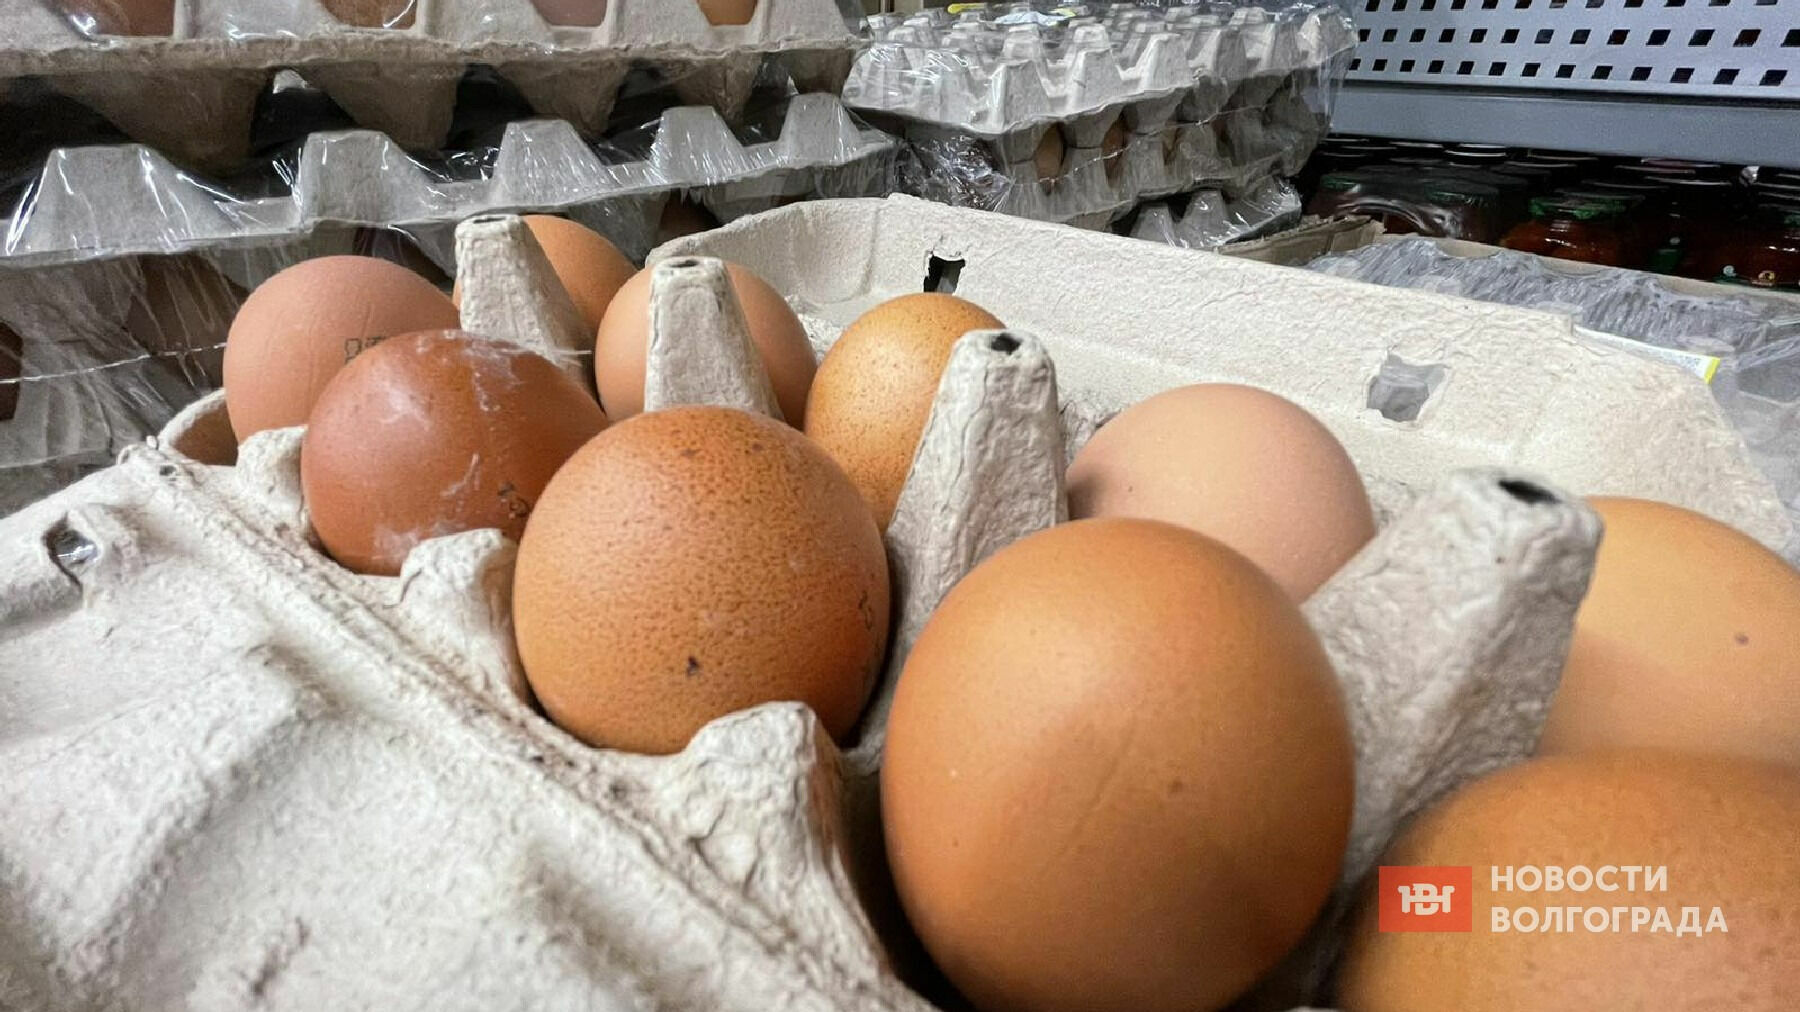 Цены резко поднялись на яйца, рис и гречку в Волгограде